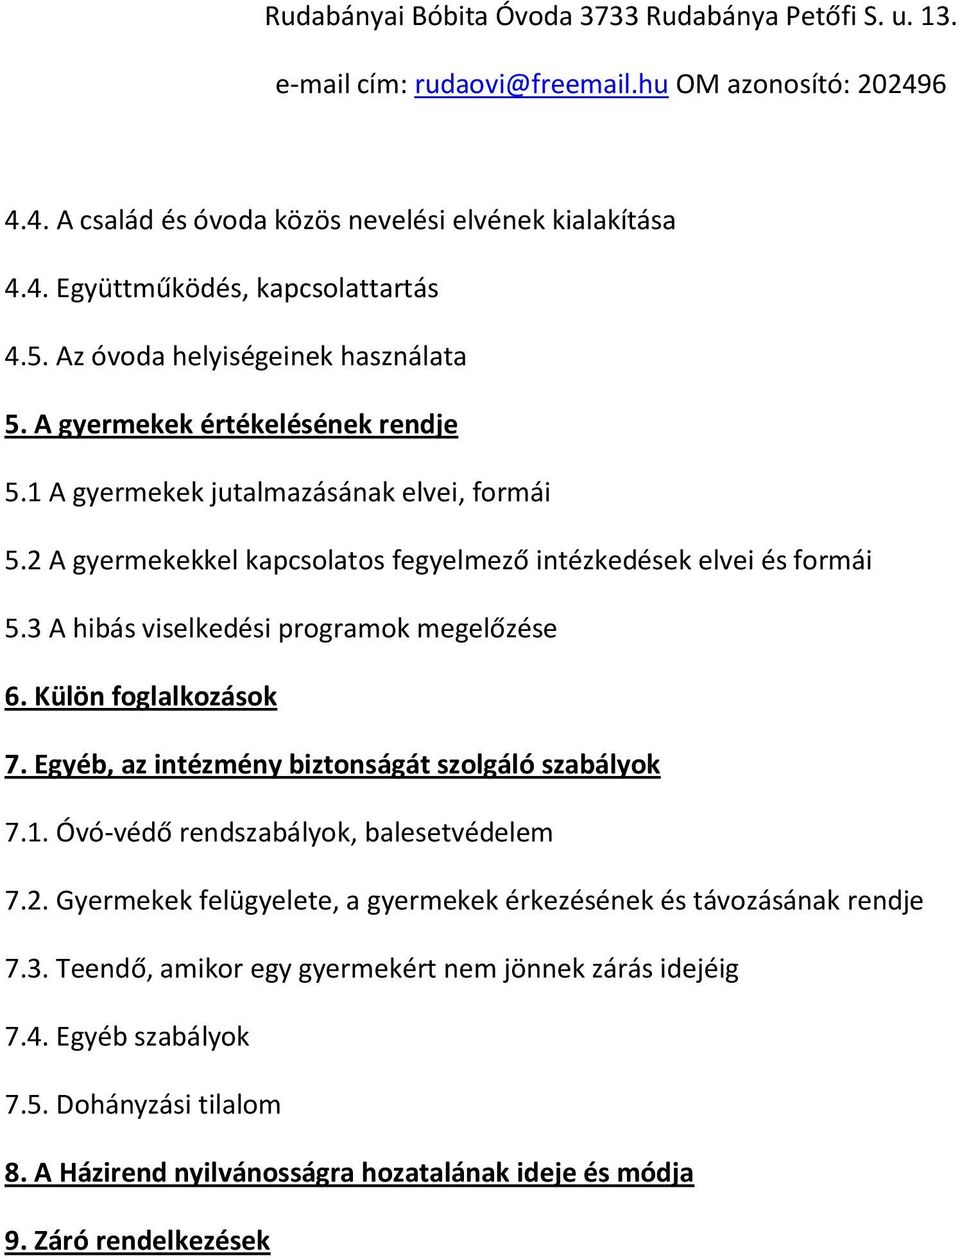 A Rudabányai Bóbita Óvoda házirendje - PDF Ingyenes letöltés